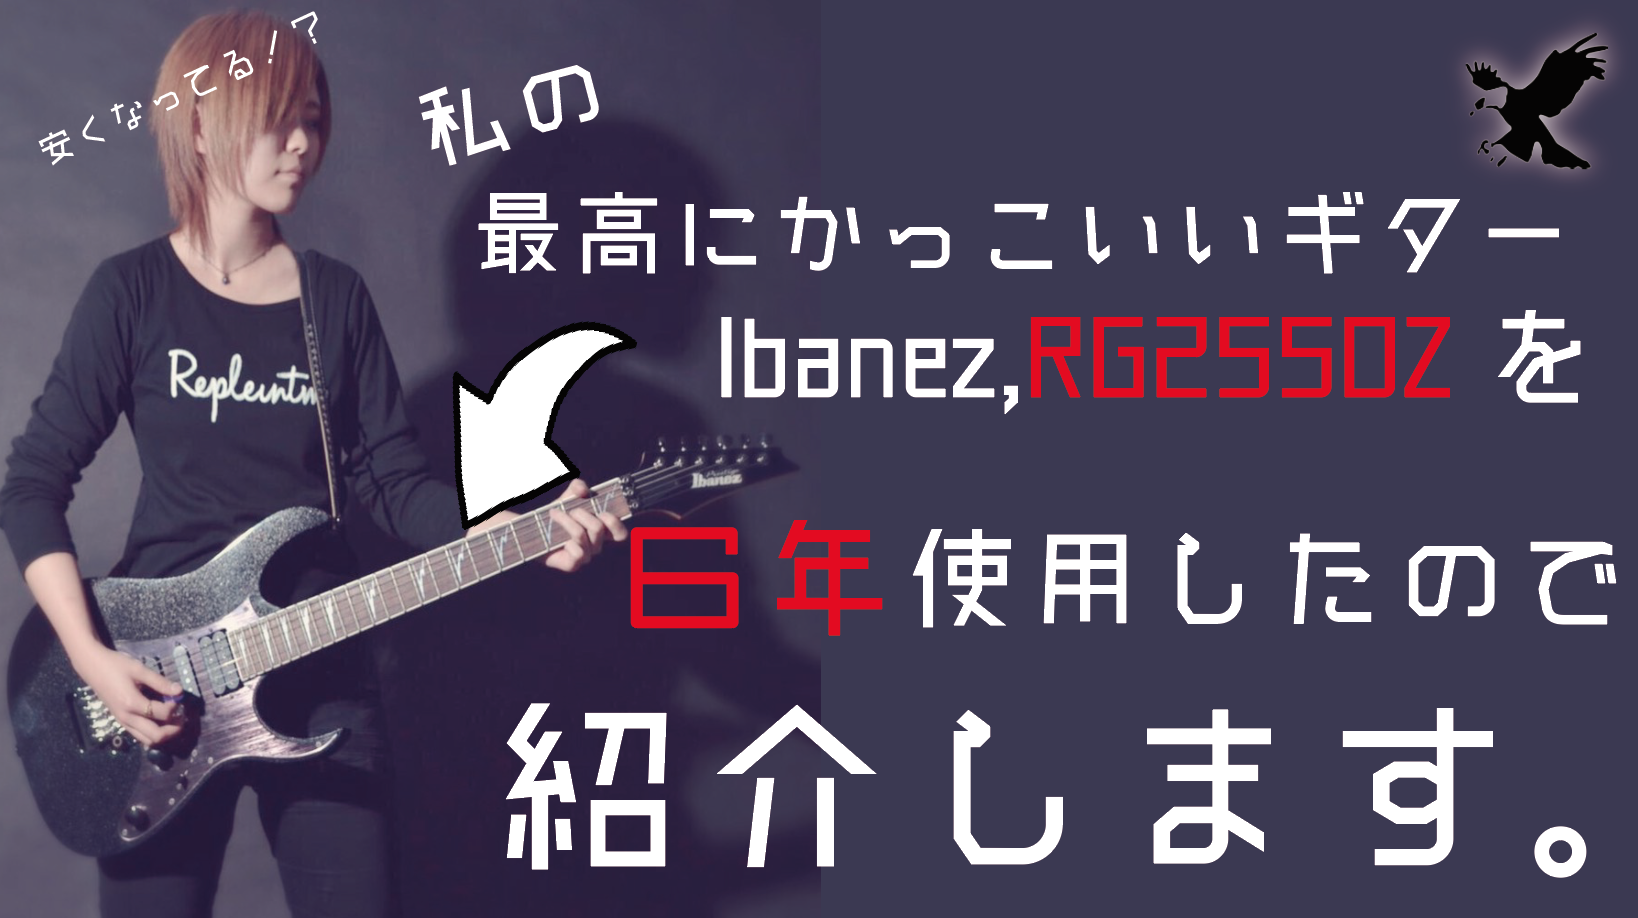 安くなってる かっこいいギター Ibanez Rg2550zの良さを６年